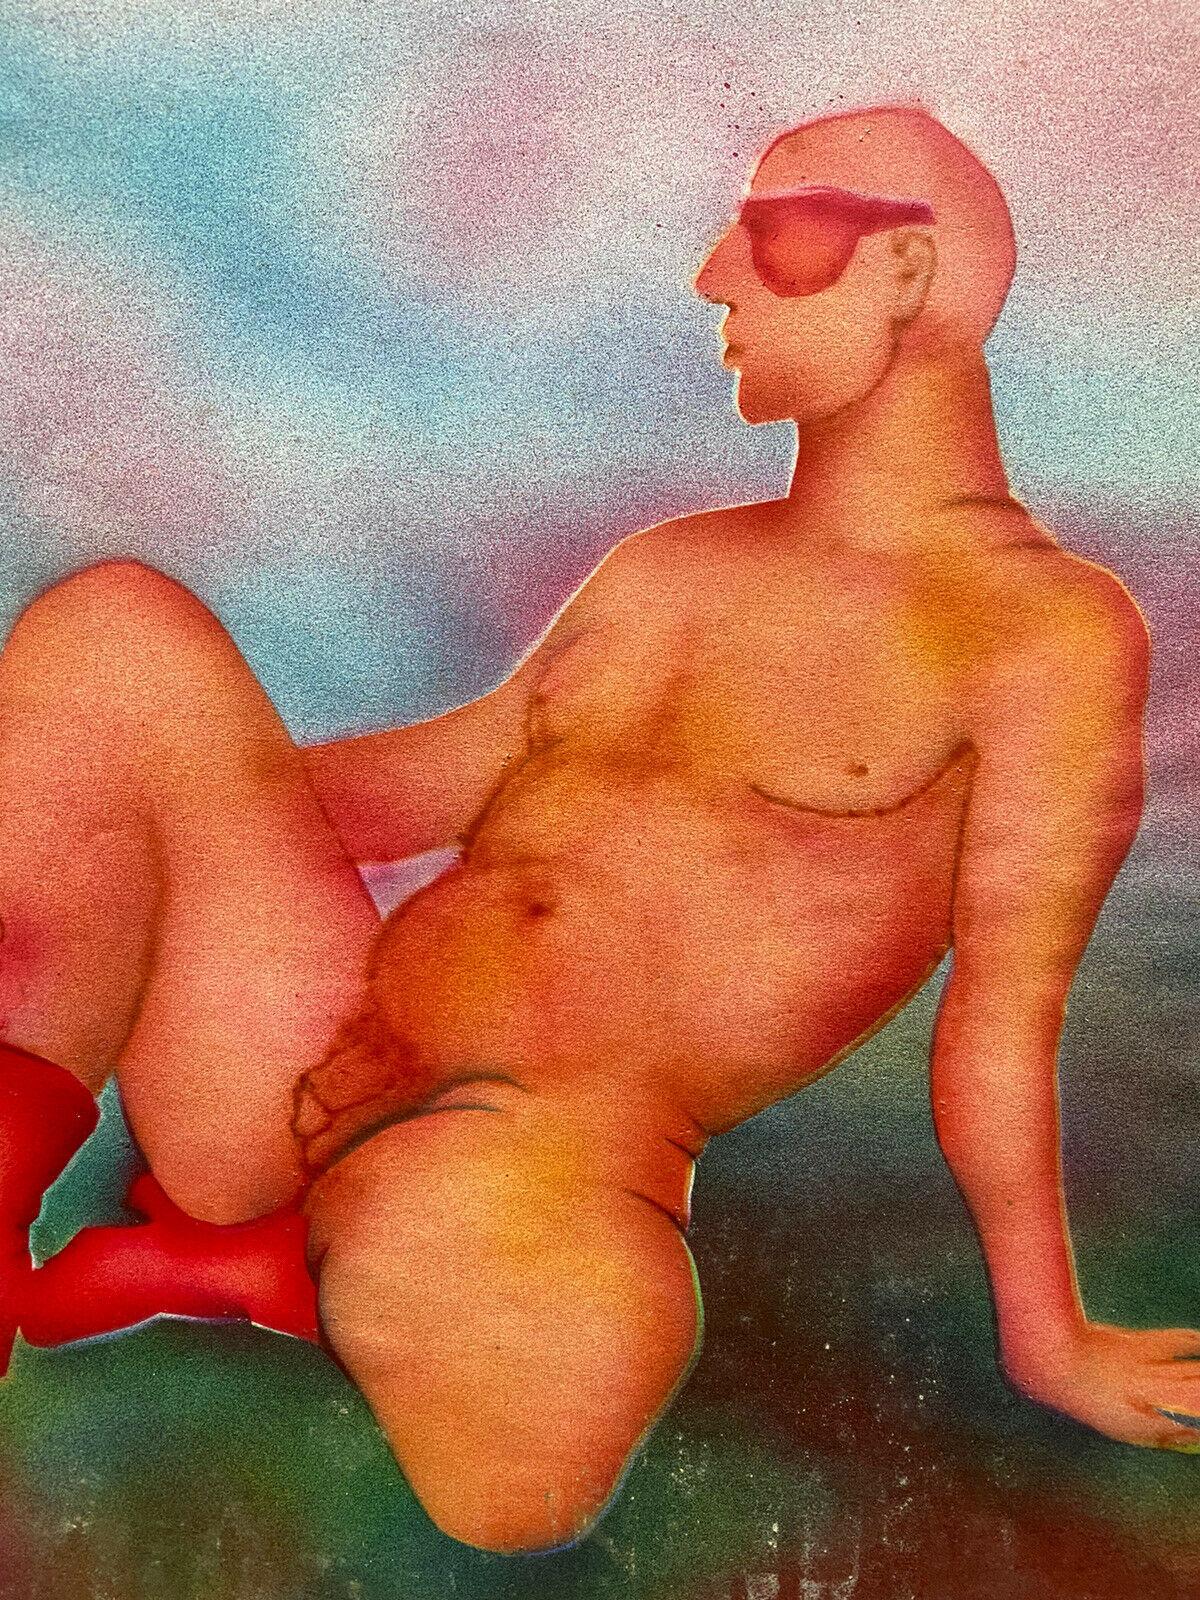 20. Jahrhundert französisch-moderne PAINTING des 20. Jahrhunderts  EROTIC MALE NUDE PORTRAIT IN ROT STIEFEL – Painting von Jean Marc